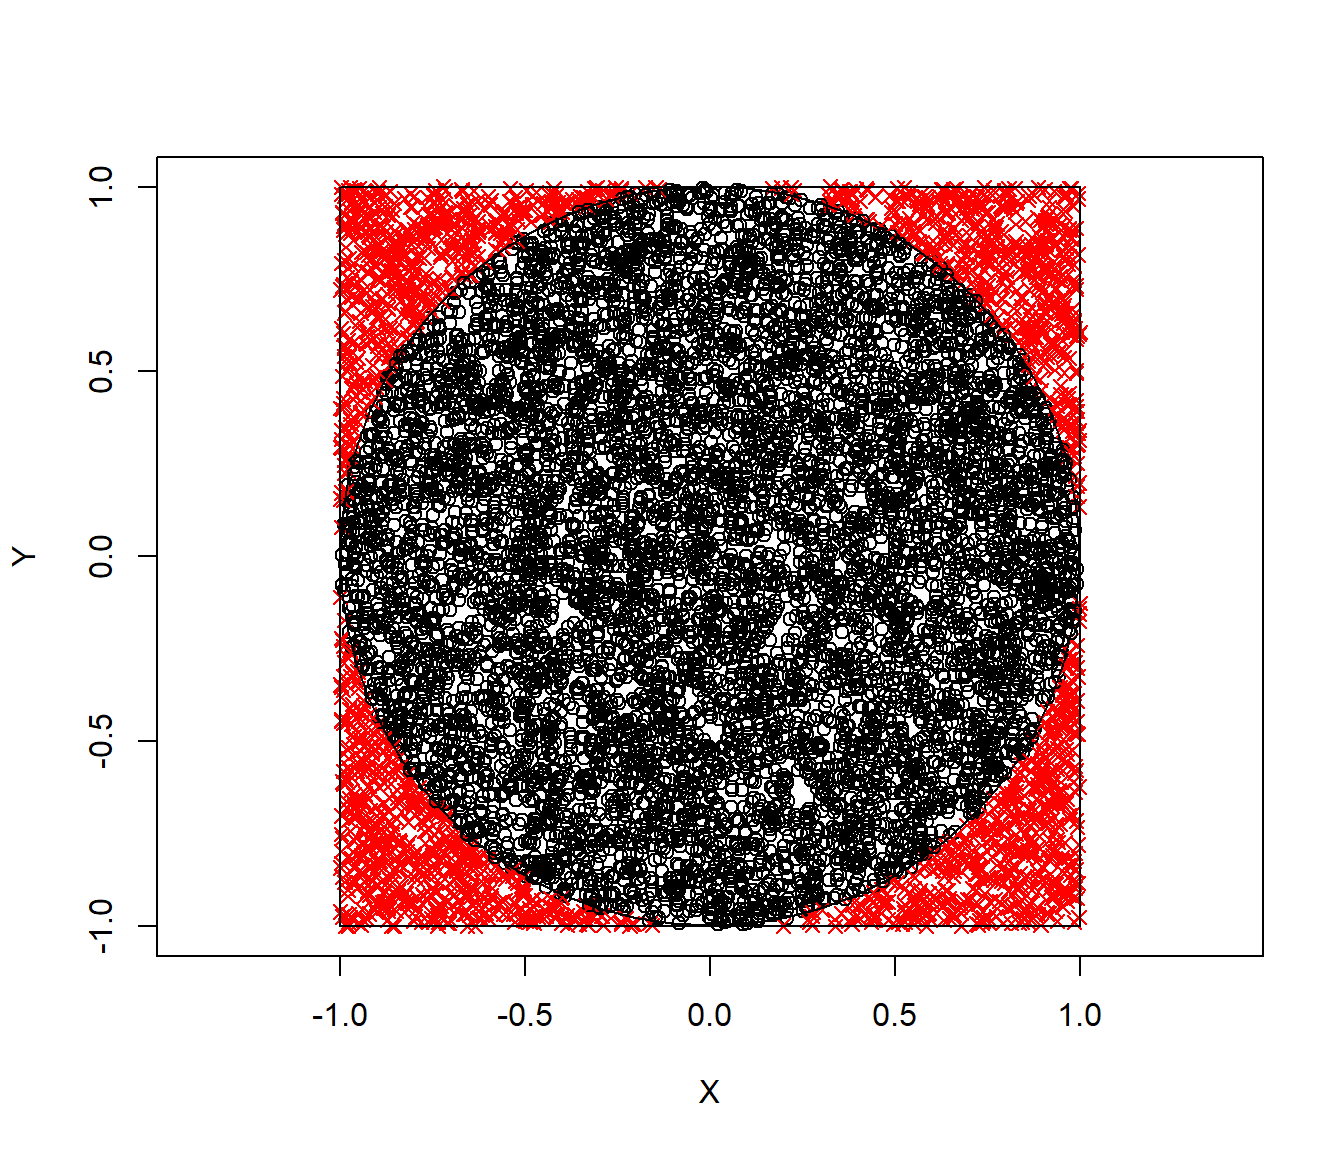 Valores generados con distribución uniforme bidimensional, con colores y símbolos indicando si están dentro del círculo unidad.